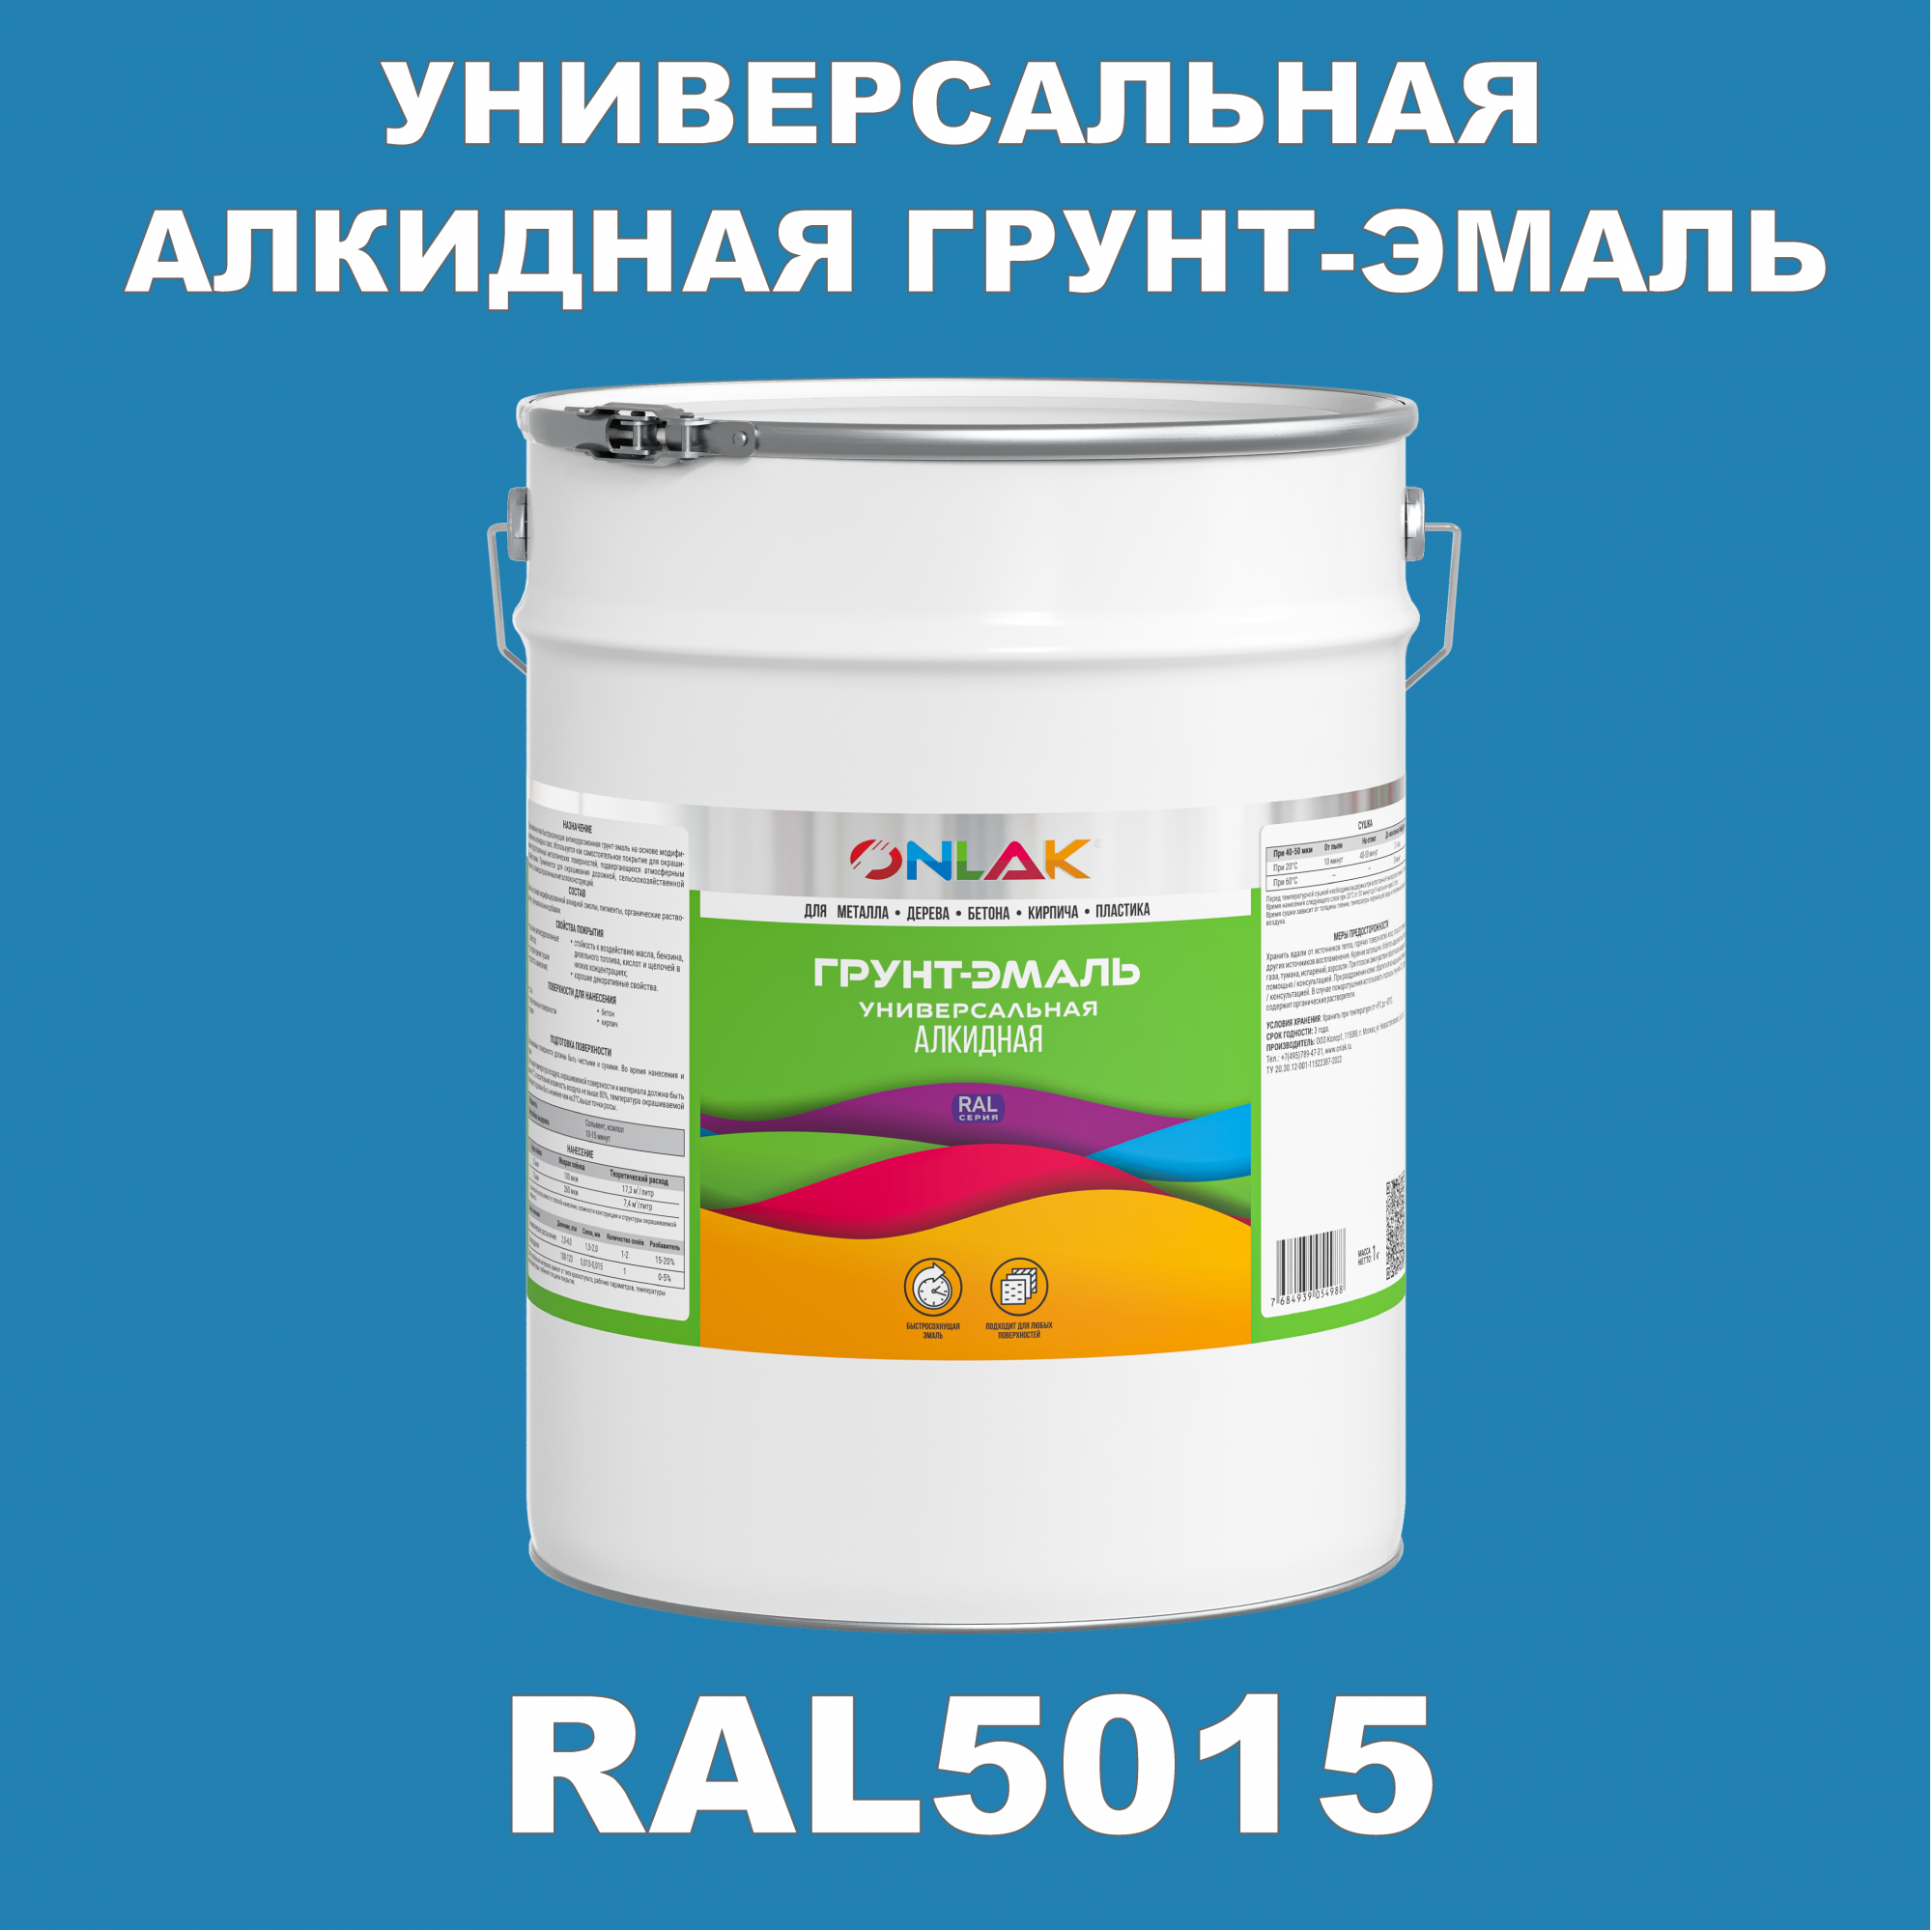 Грунт-эмаль ONLAK 1К RAL5015 антикоррозионная алкидная по металлу по ржавчине 20 кг грунт эмаль yollo по ржавчине алкидная белая 0 9 кг